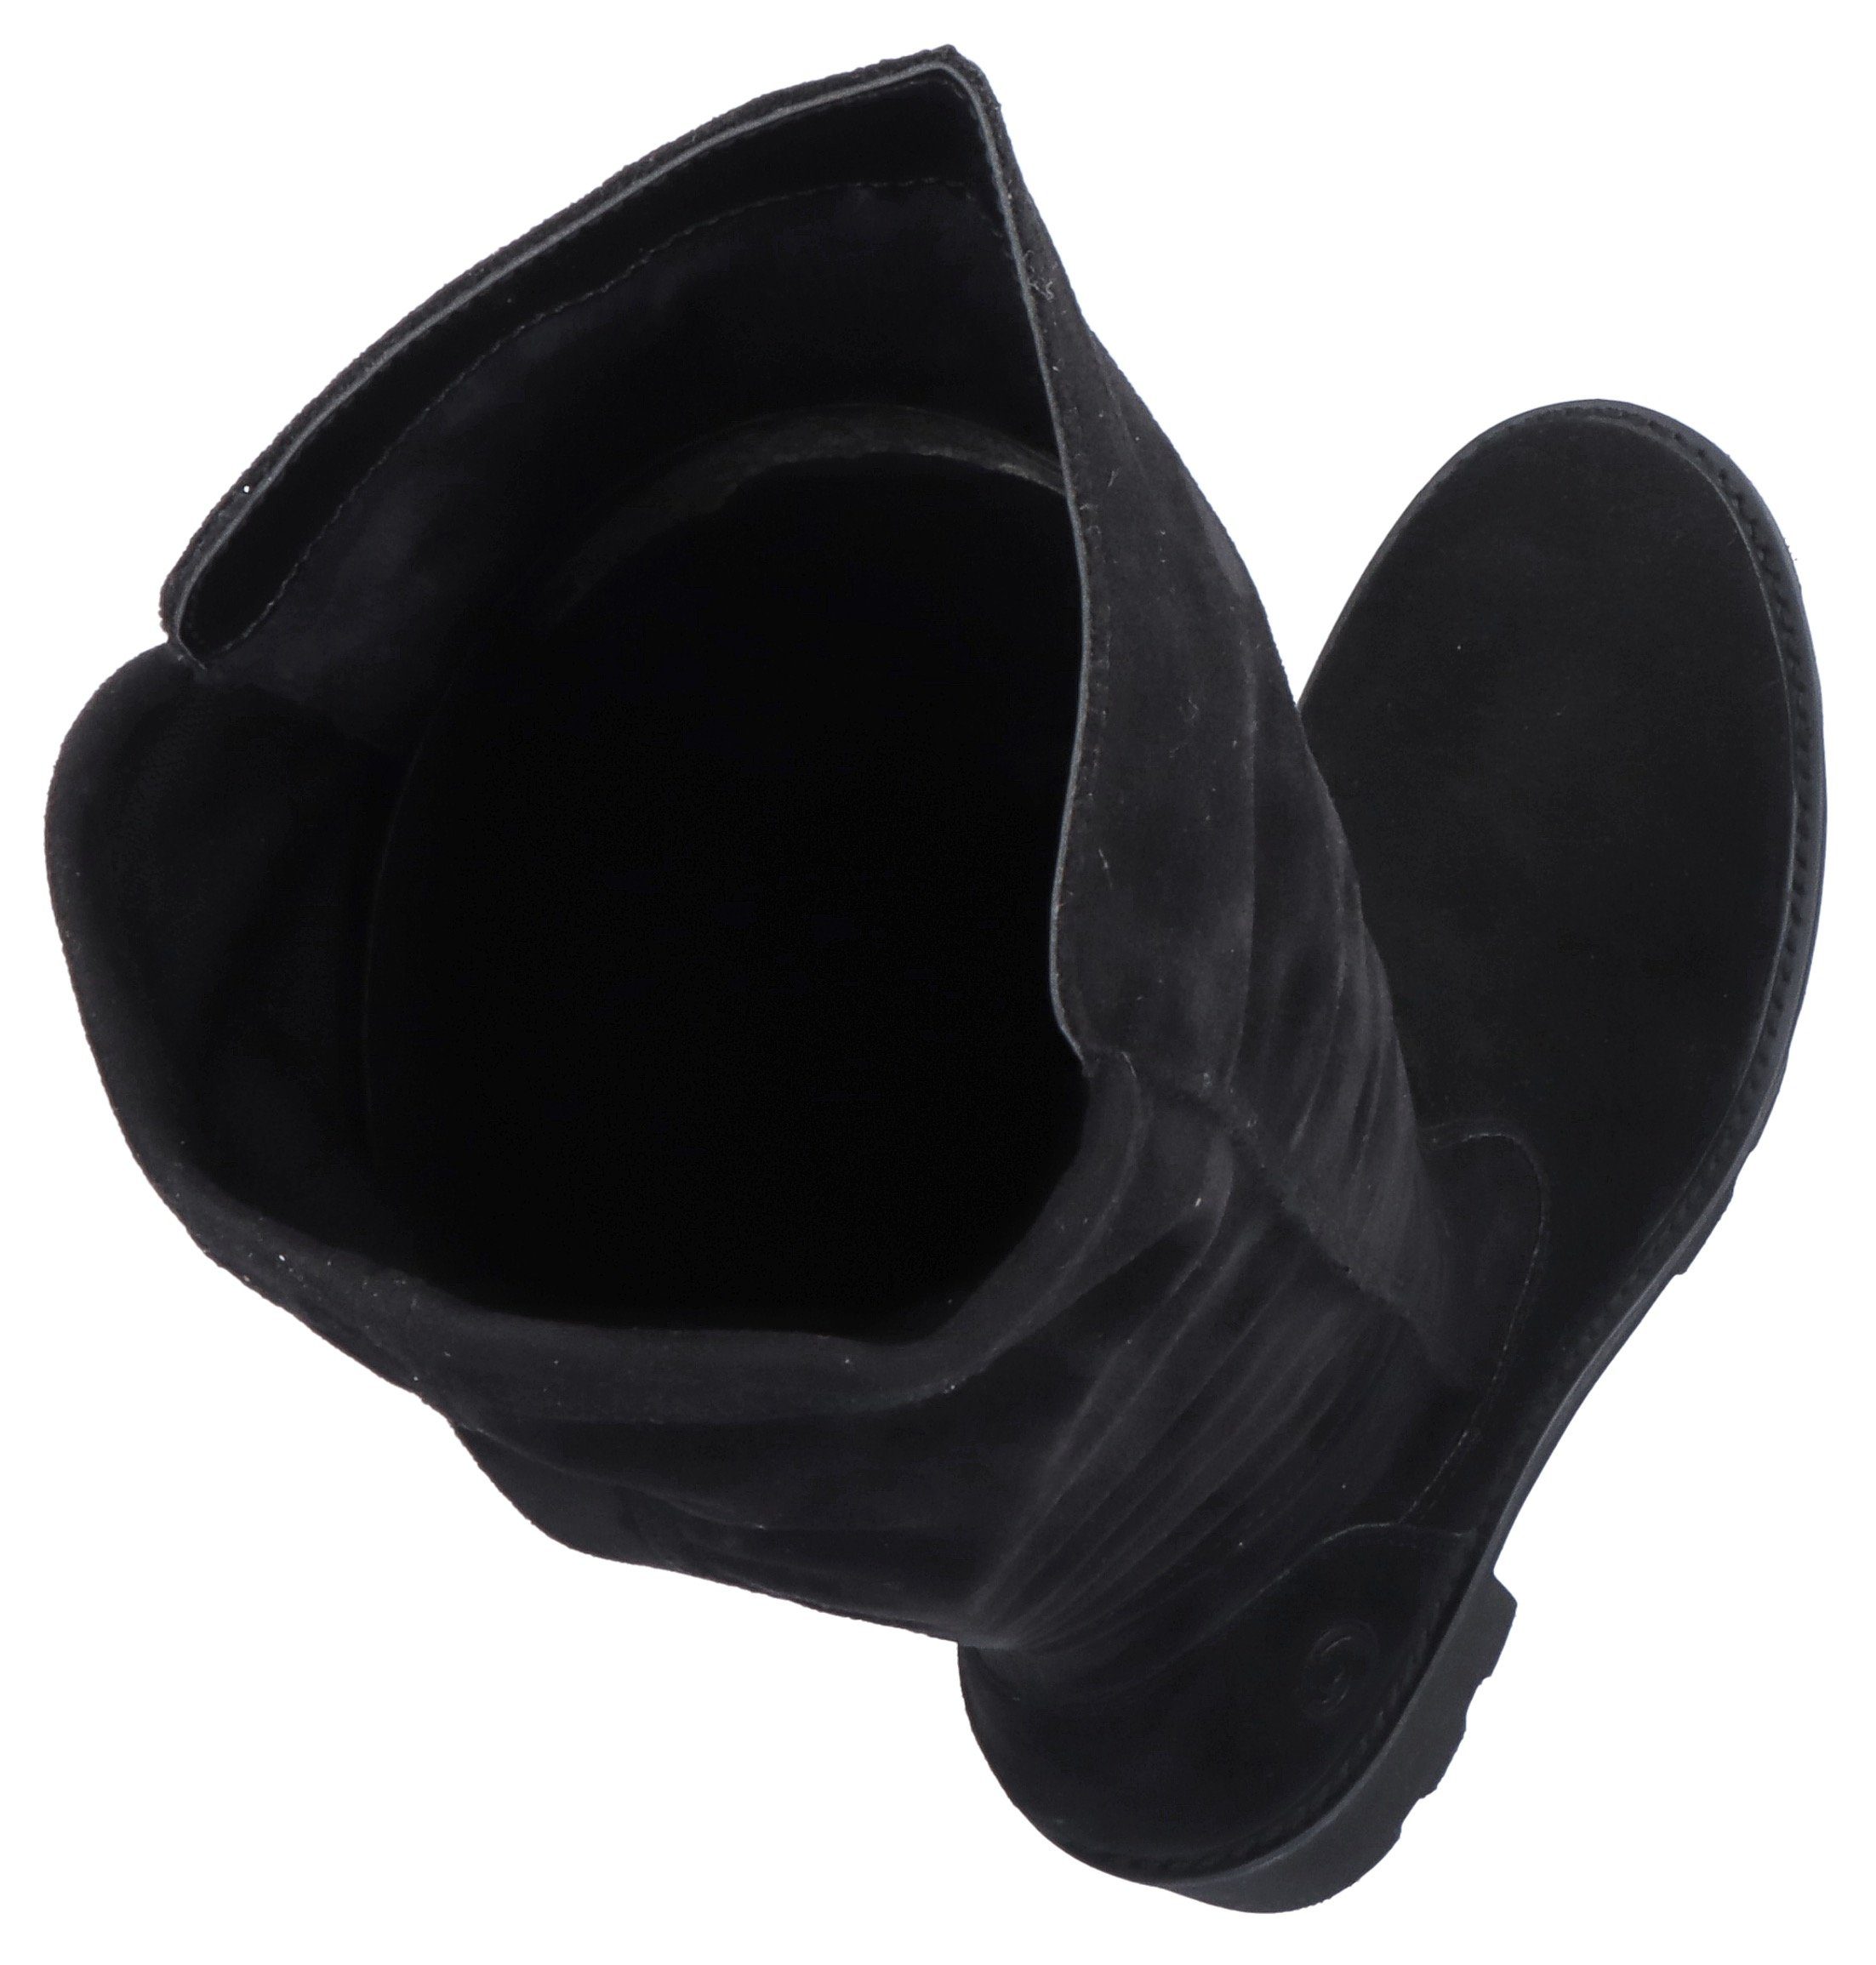 Remonte Stiefel mit praktischem Innenreißverschluss, XS-Schaft schwarz